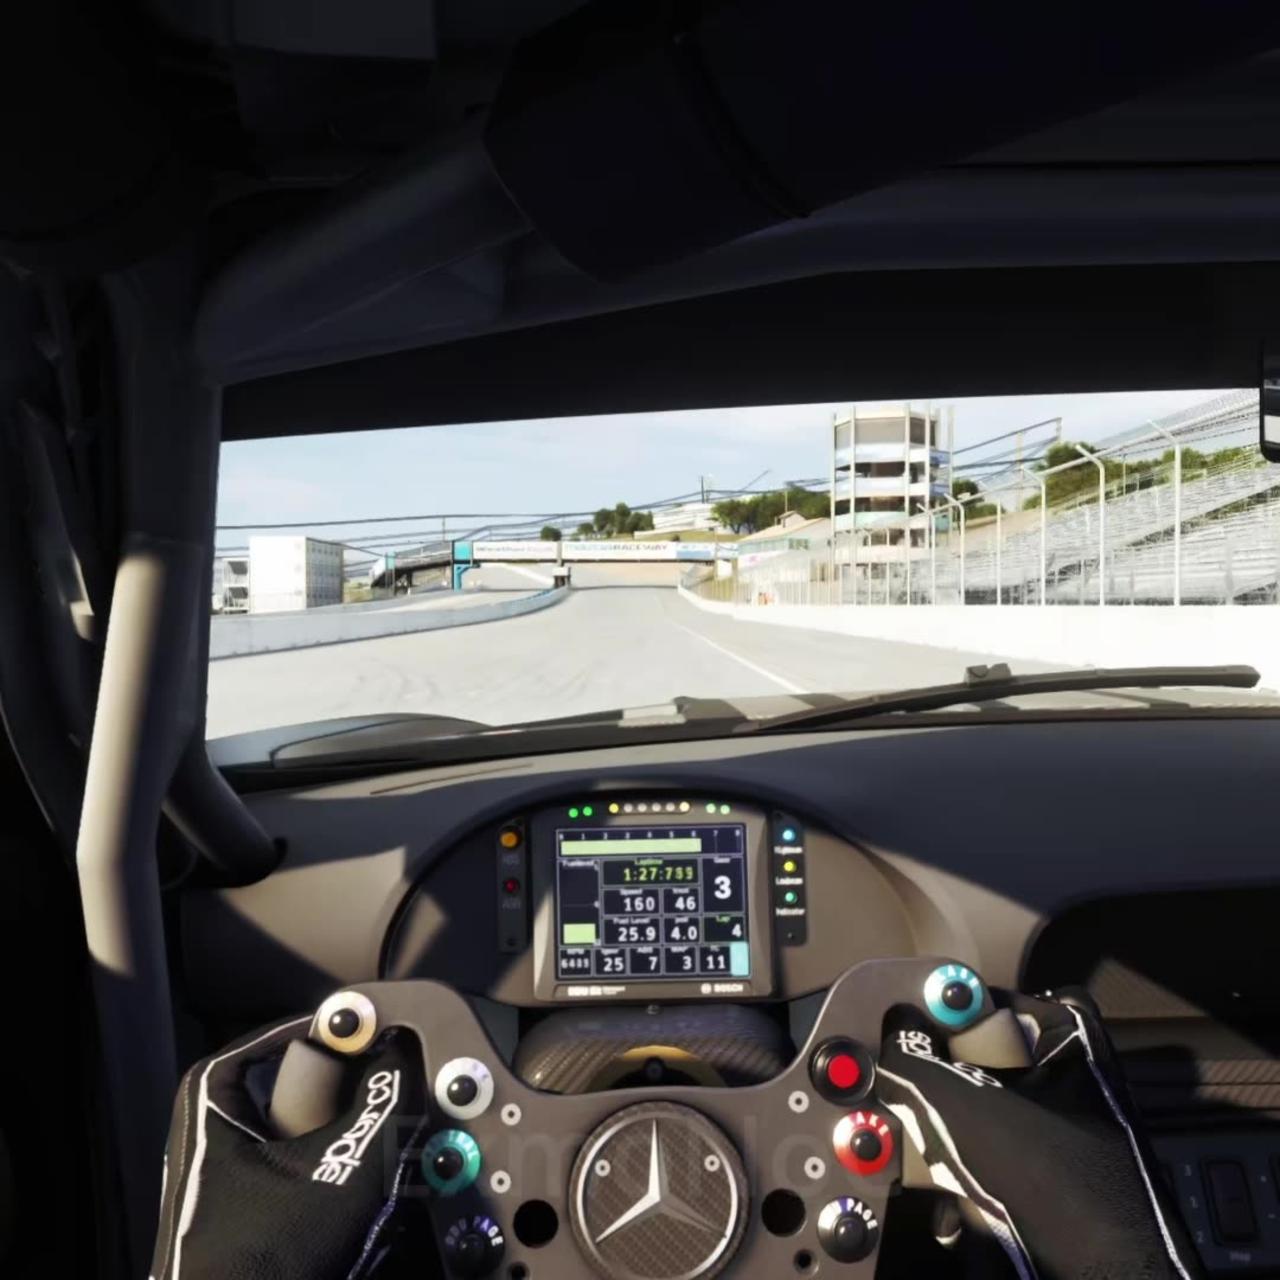 Onboard | Mercedes AMG GT3 at Laguna Seca | Assetto Corsa | Logitech G25